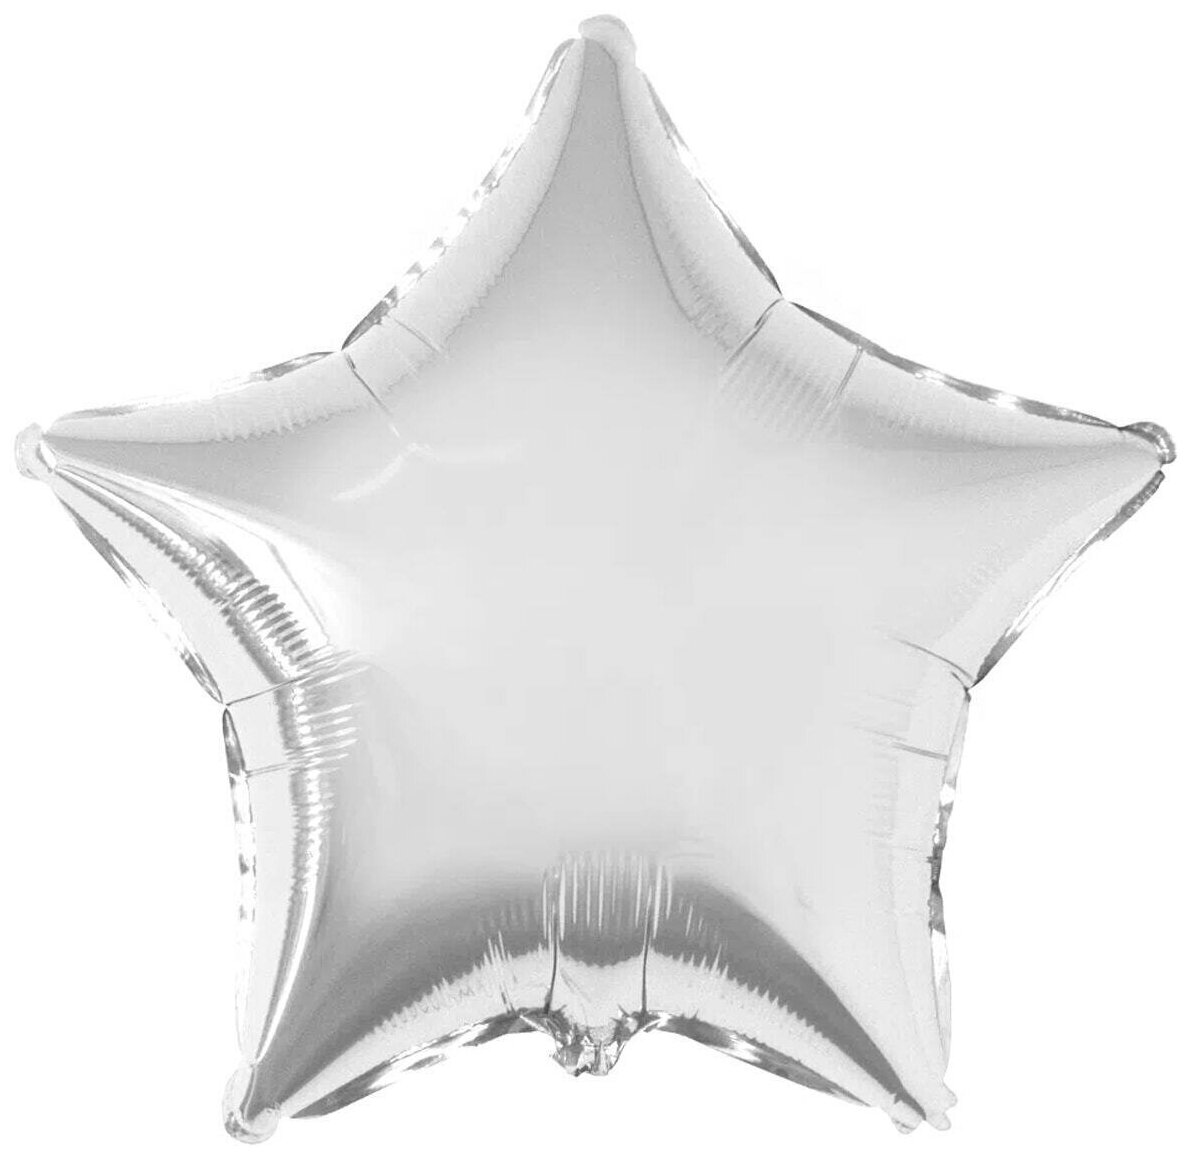 Фольгированные серебряные шары "Ультра звезда" на выписку из роддома или день рождения сына или дочери, 2 шара